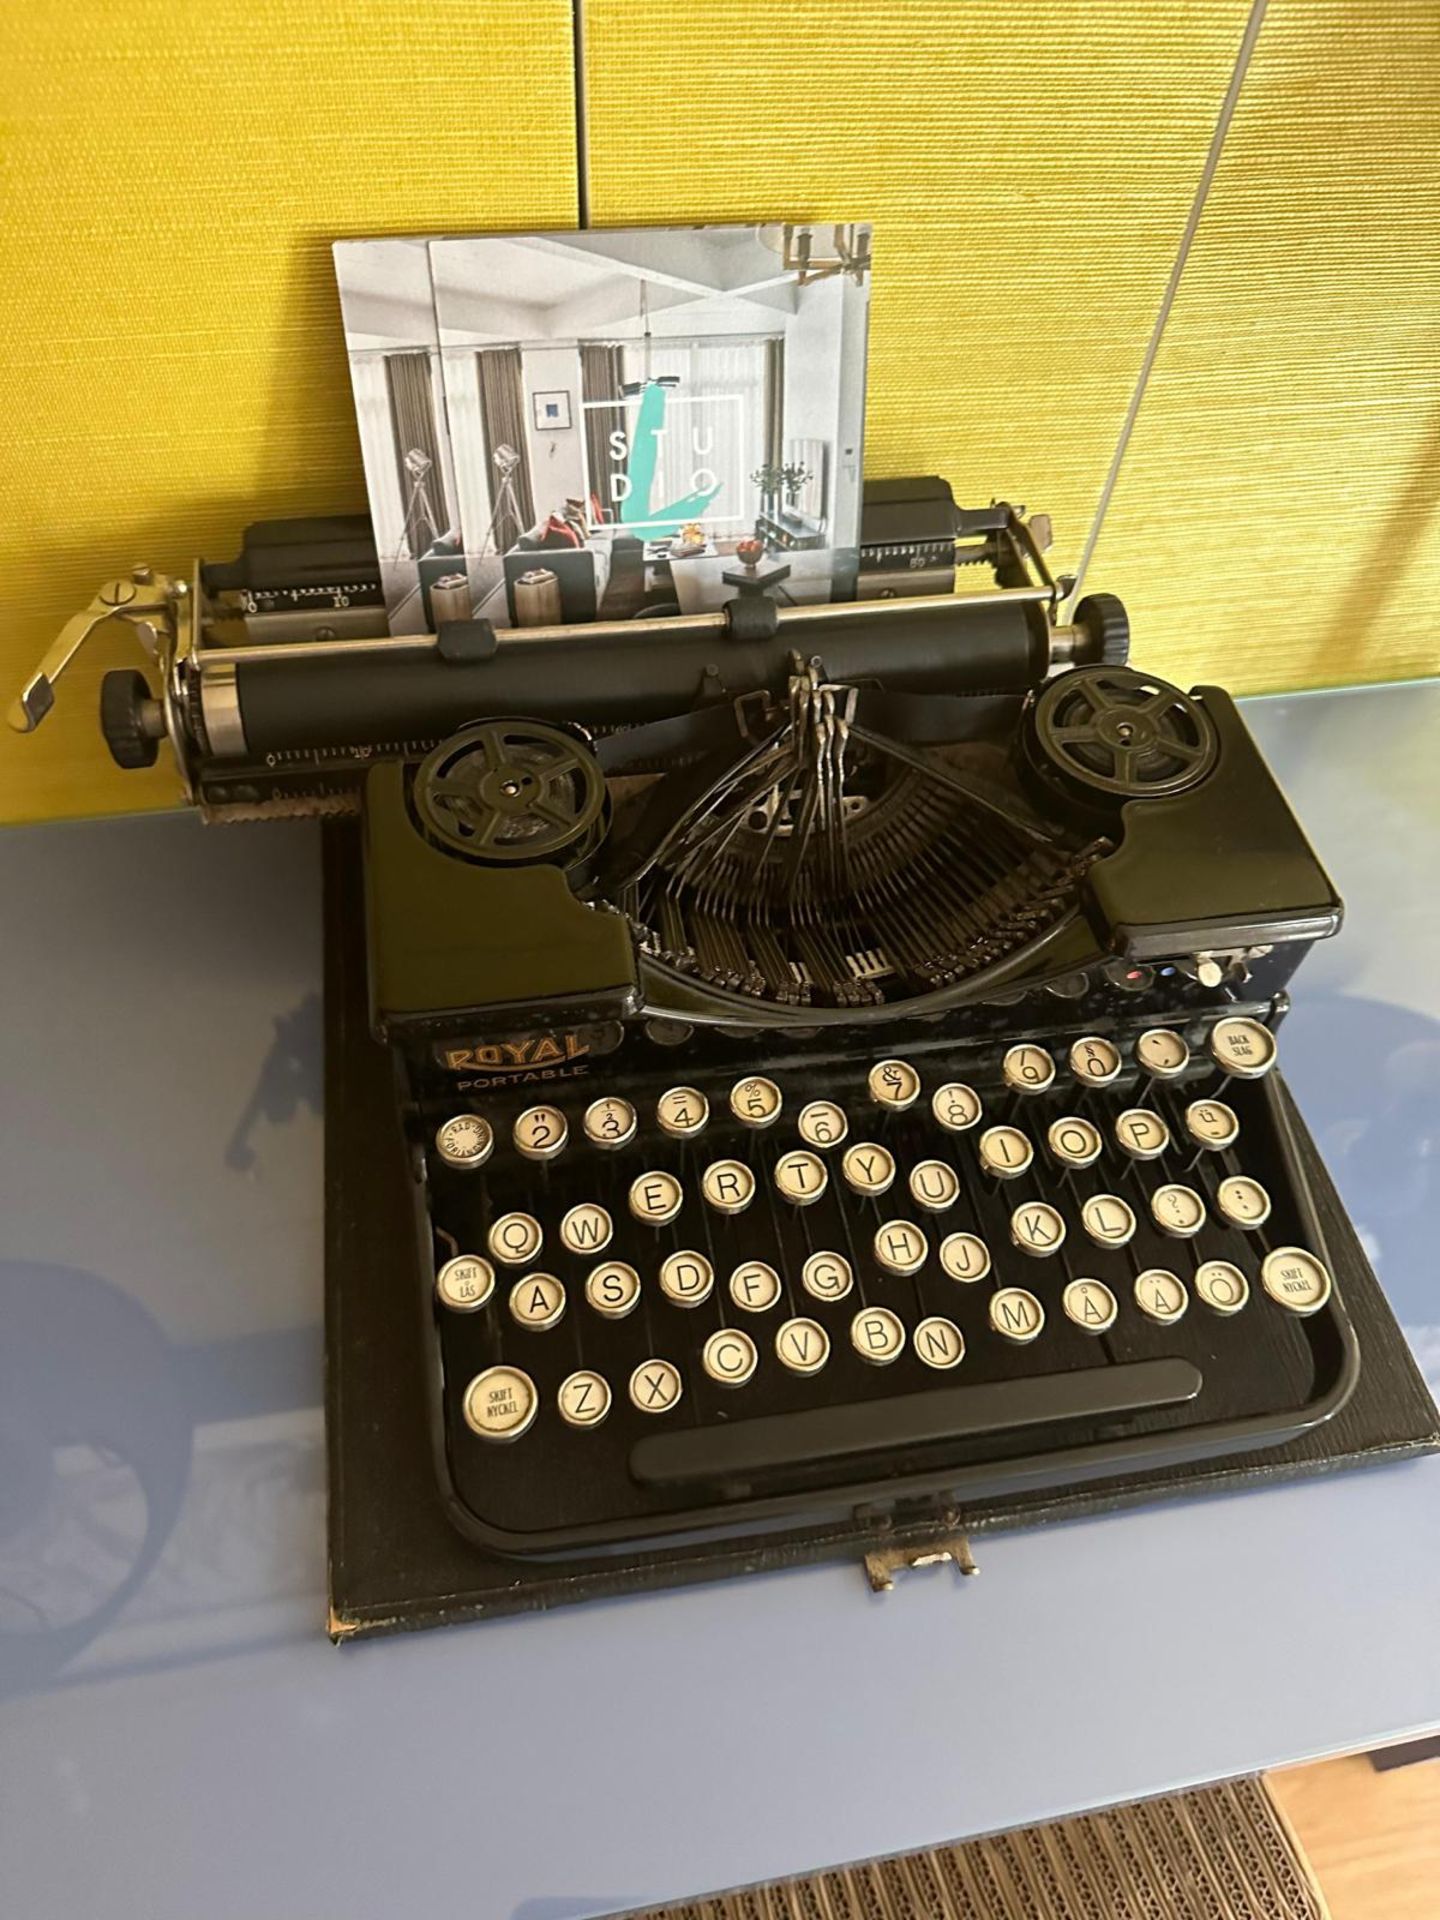 A Royal Portable American Black Typewriter 1930s (Apt 16) - Image 3 of 3